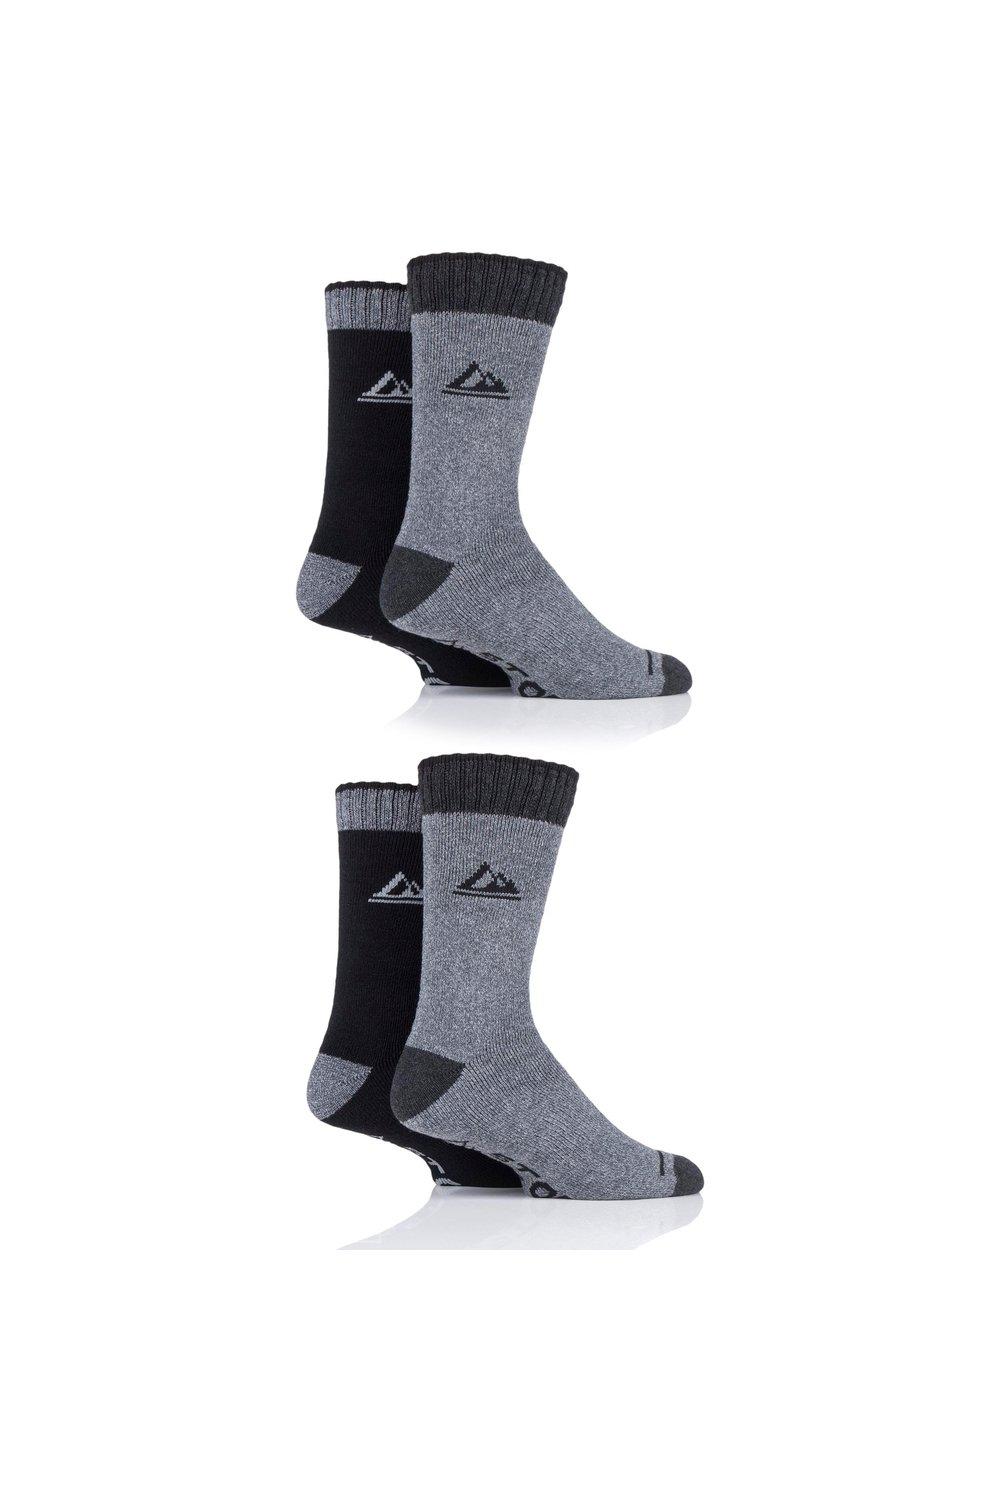 4 пары носков Performance Boot SOCKSHOP Storm Bloc, серый утеплители для ног игро beauty махровые 1 пар